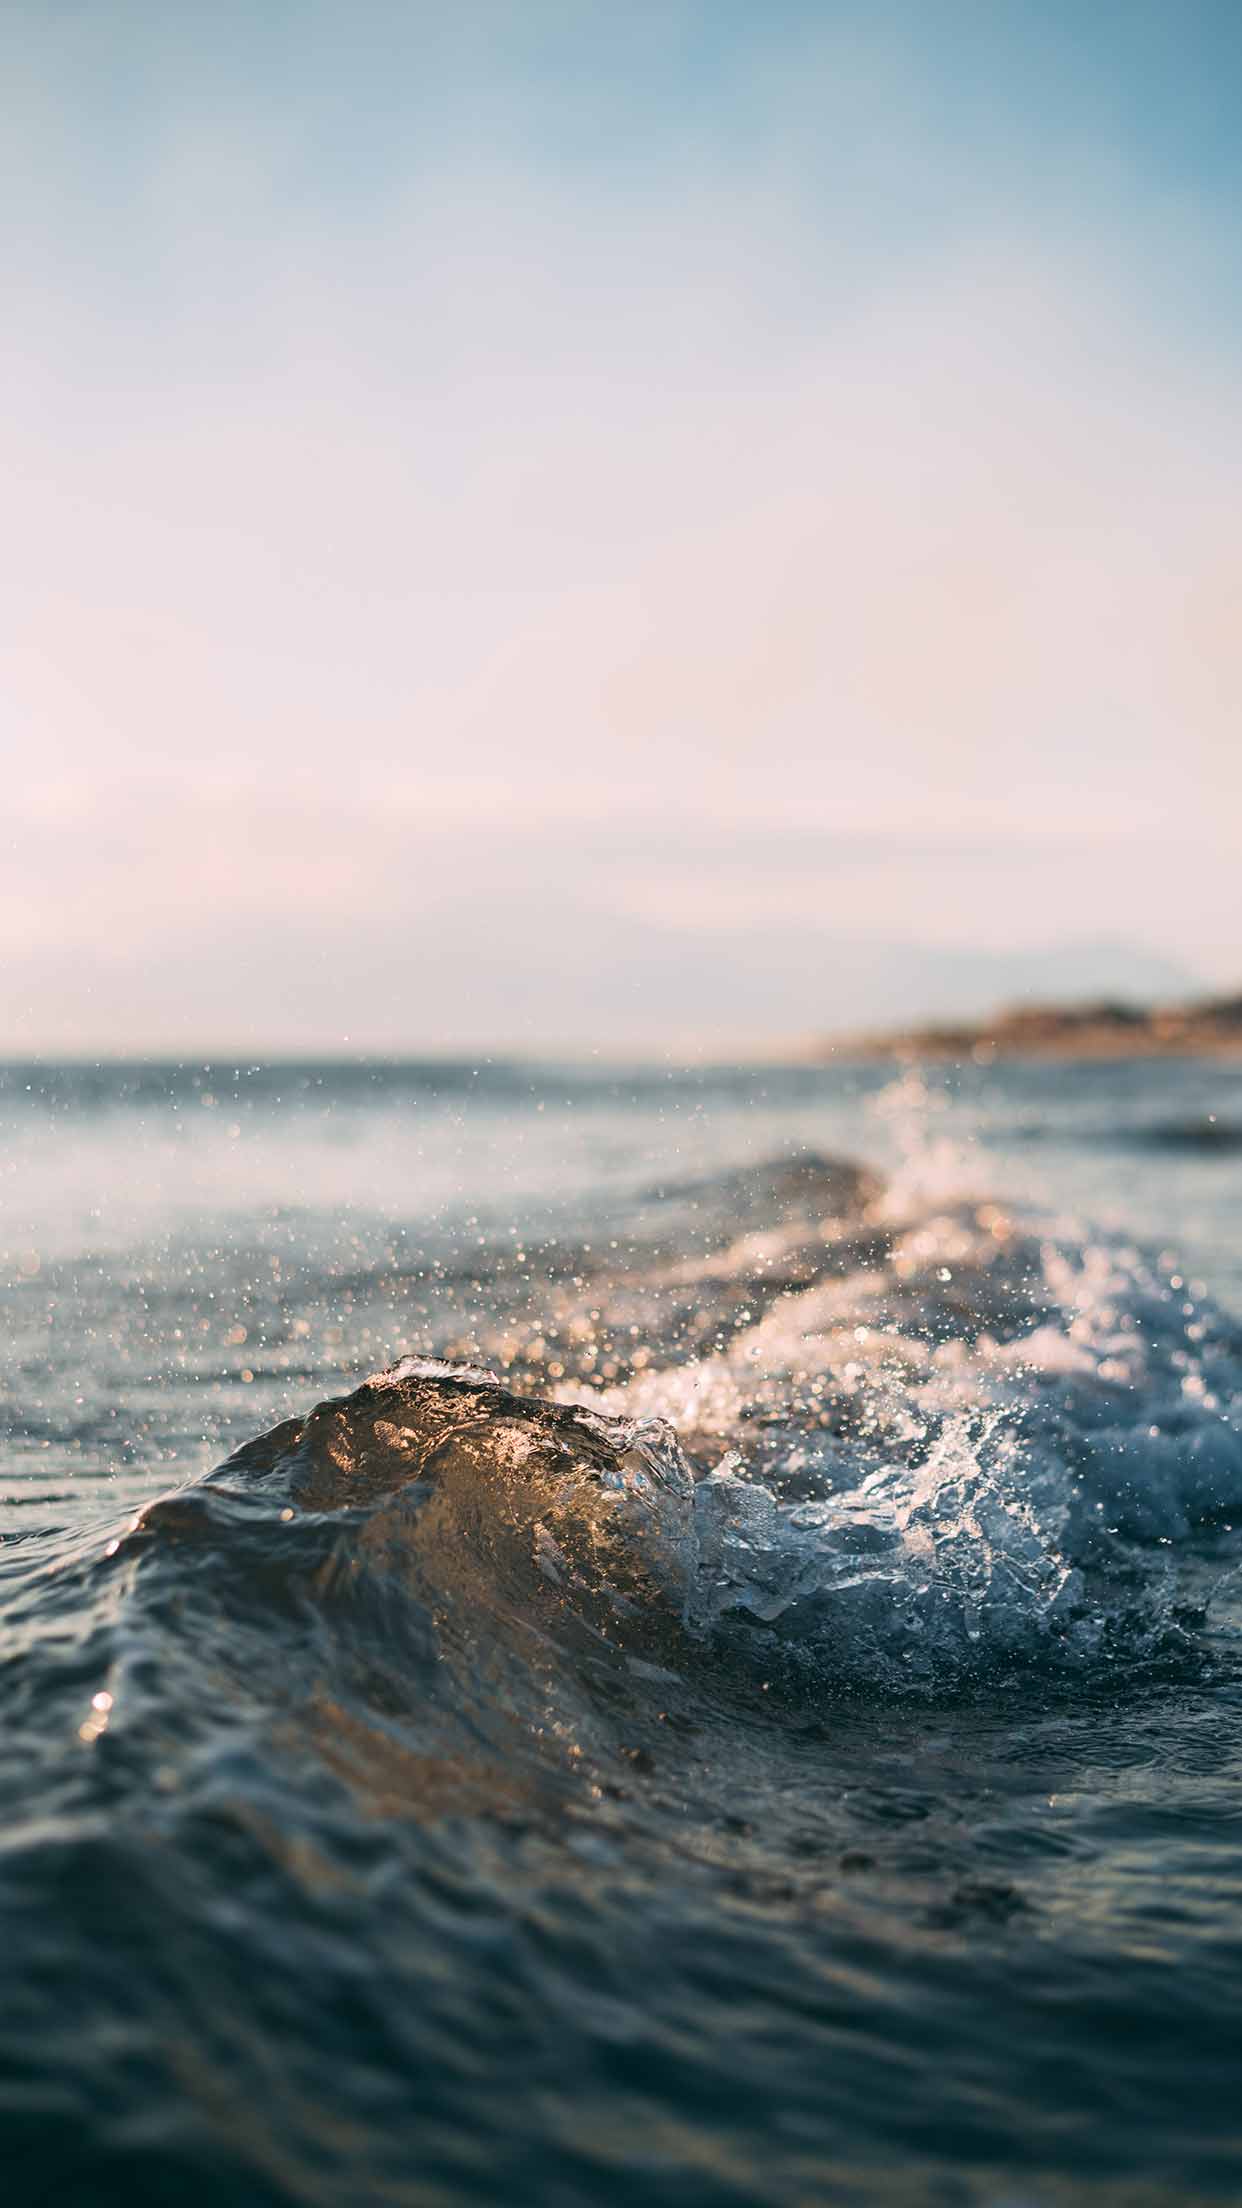 océano fondo de pantalla para iphone,ola,mar,cuerpo de agua,agua,horizonte